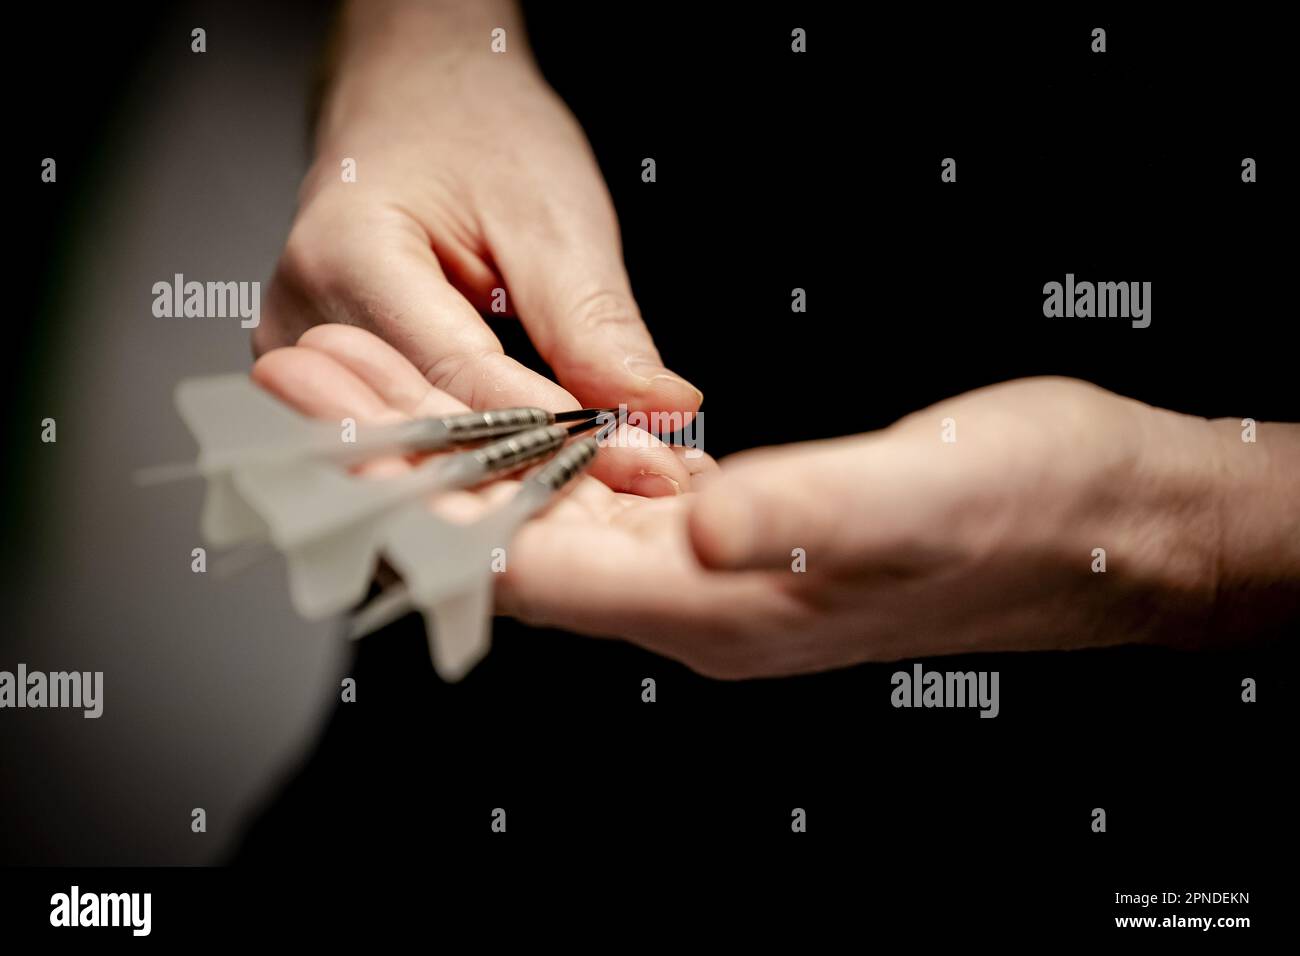 DELFT - Raymond van Barneveld lors d'un test d'un nouveau dart développé par des chercheurs de tu Delft. Selon les chercheurs, il s'agit d'une dart qui est presque 50 pour cent plus précise qu'une dart classique. ANP ROBIN VAN LONKHUIJSEN Banque D'Images